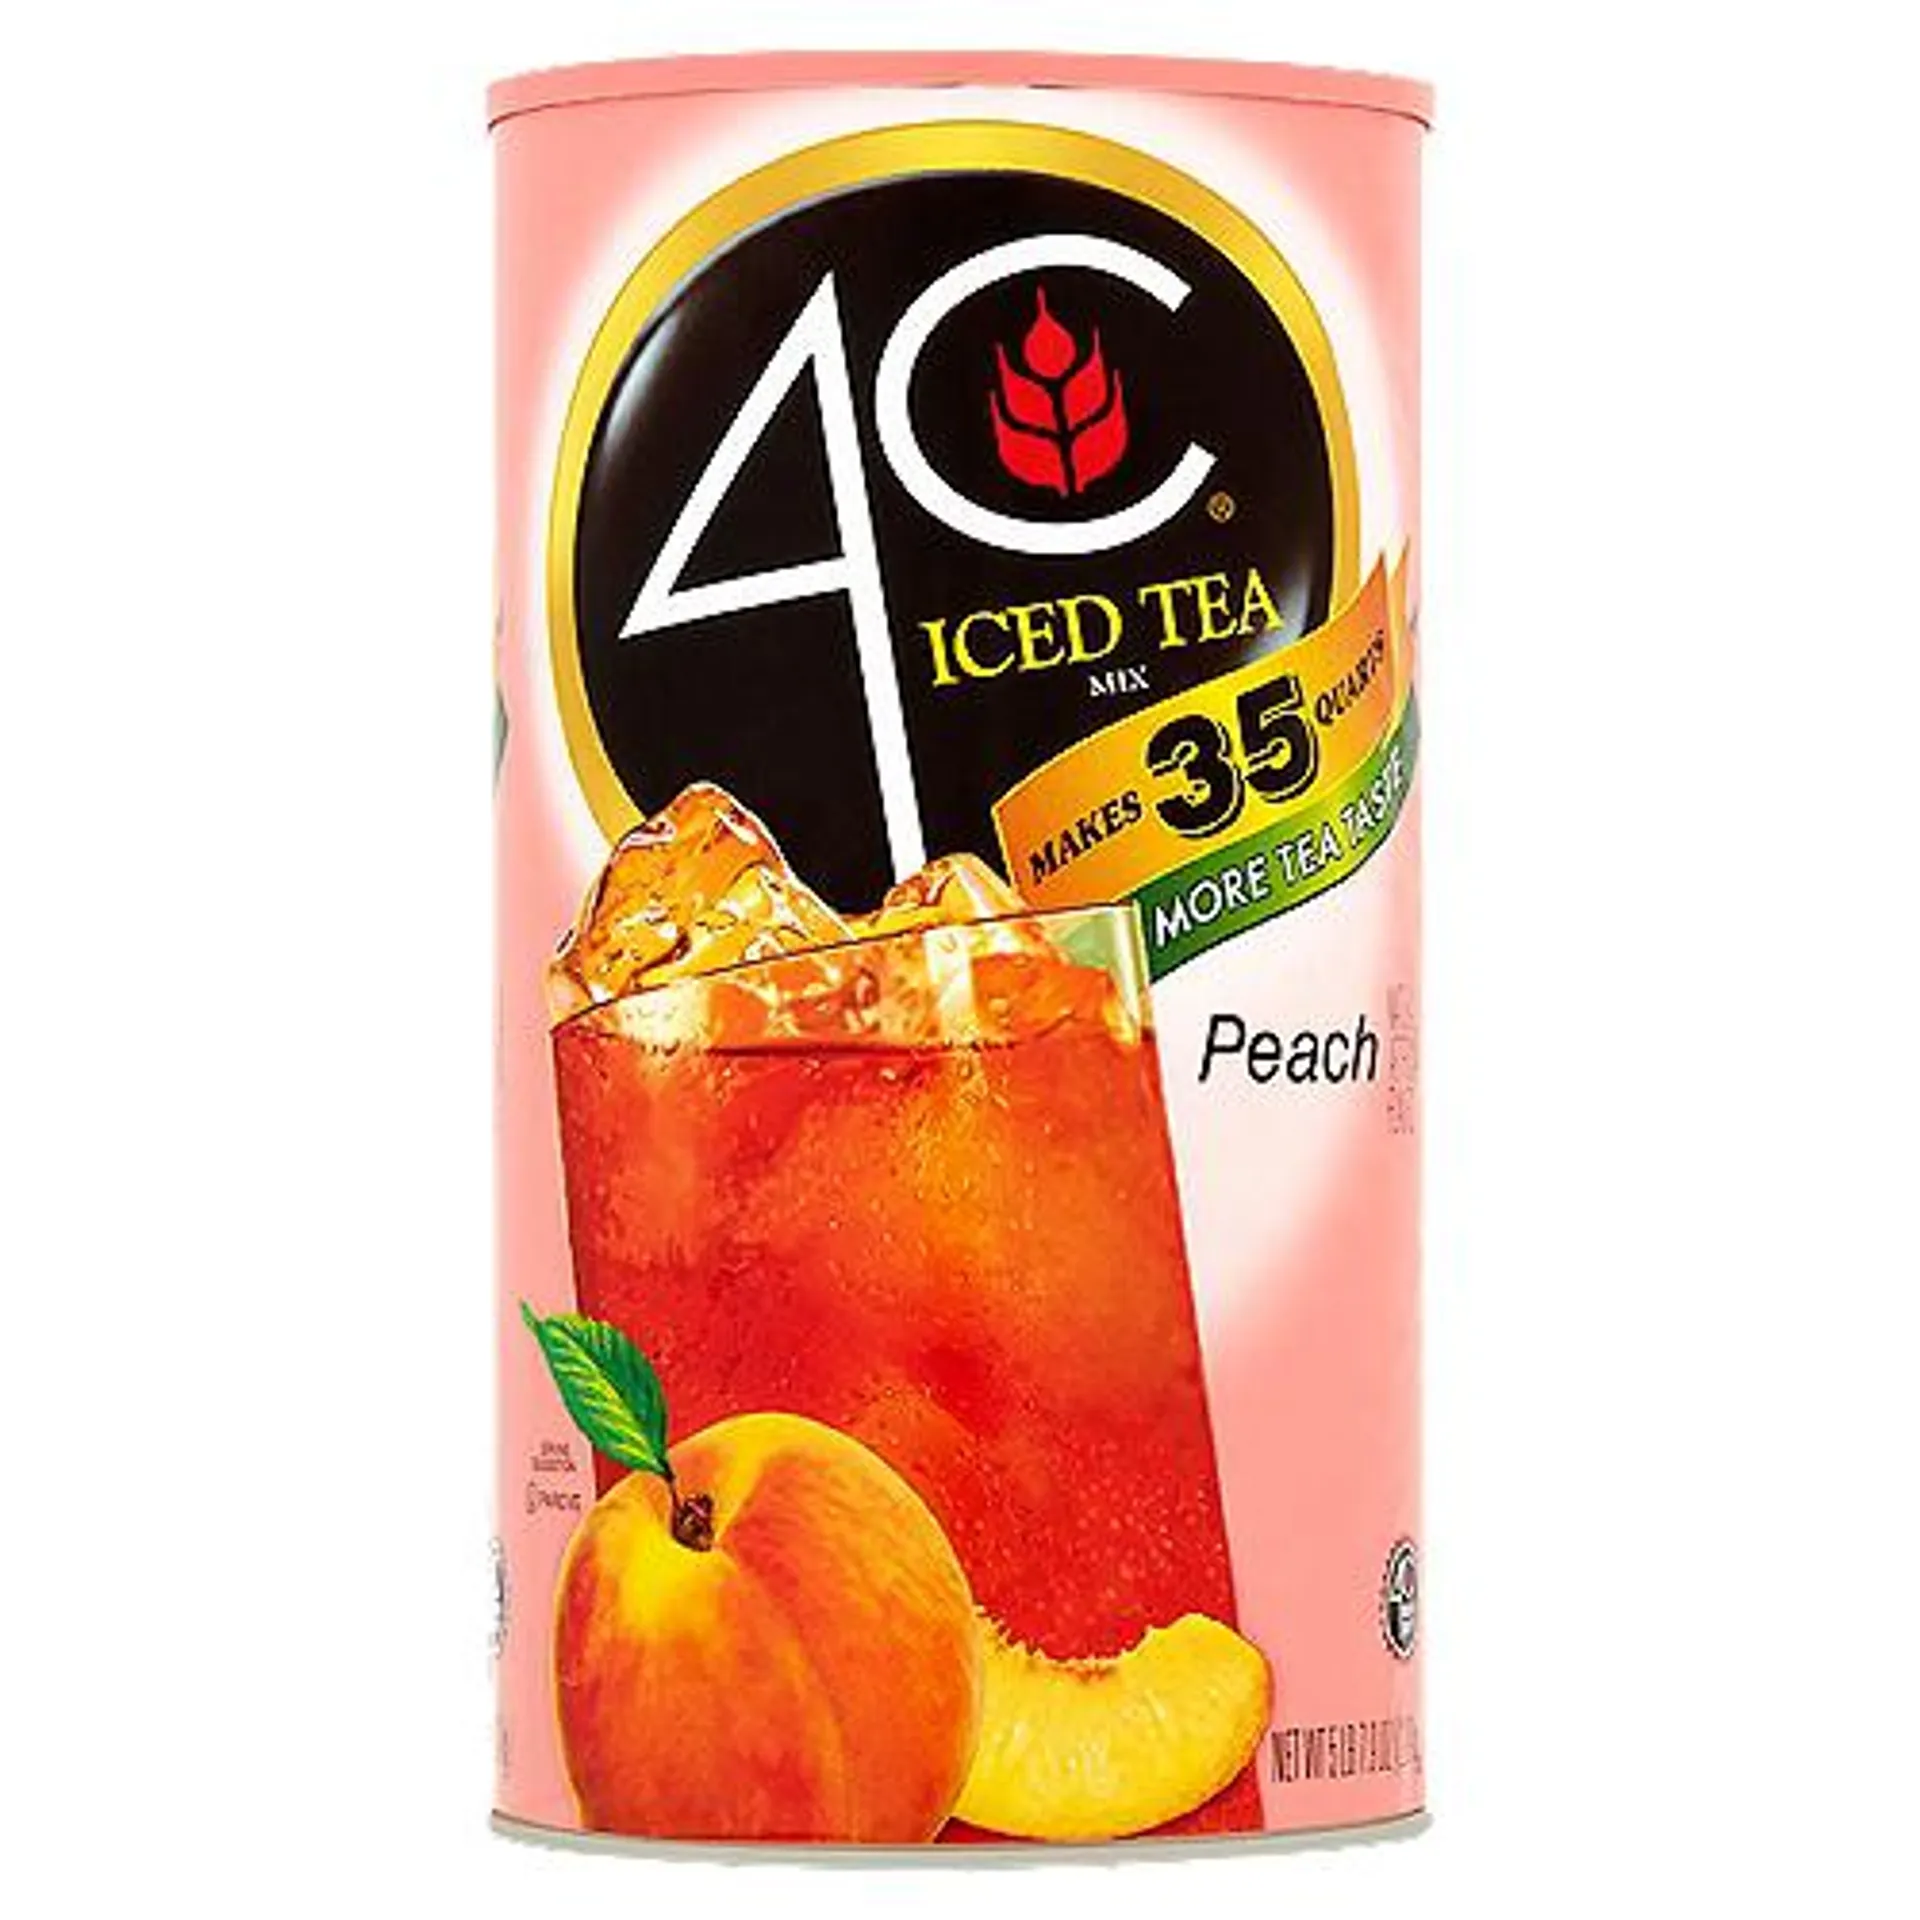 4C Peach, Iced Tea Mix, 82.6 Ounce